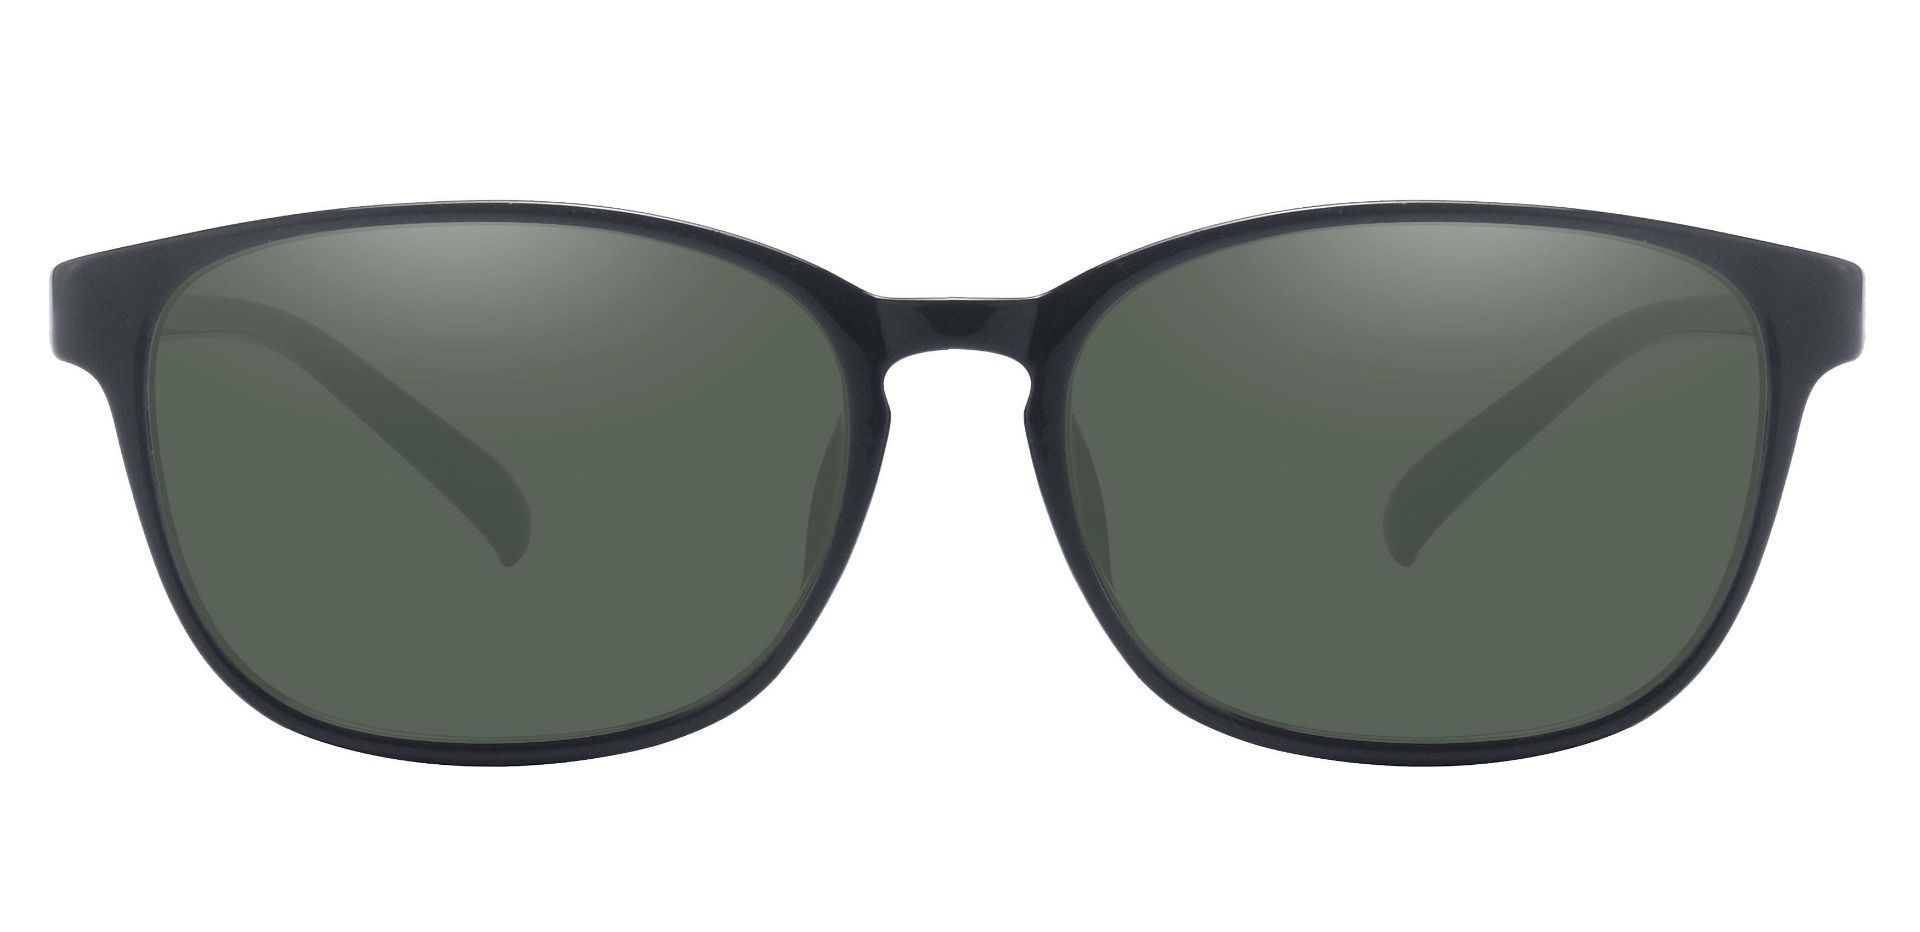 Samson Rectangle Prescription Sunglasses - Black Frame With Green Lenses